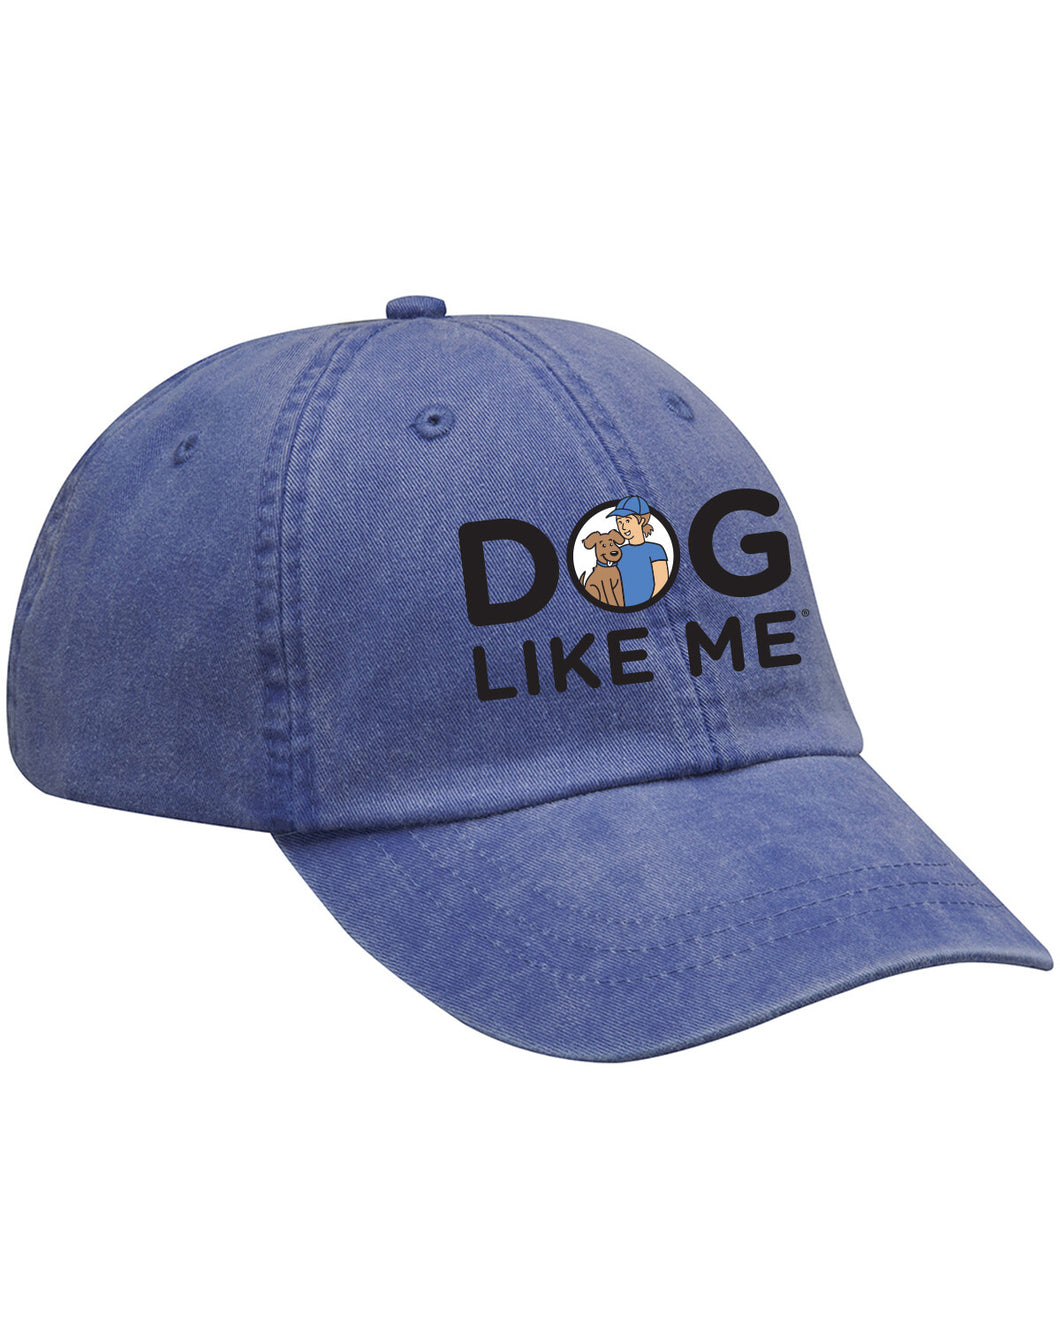 Dog lIke Me unisex hat